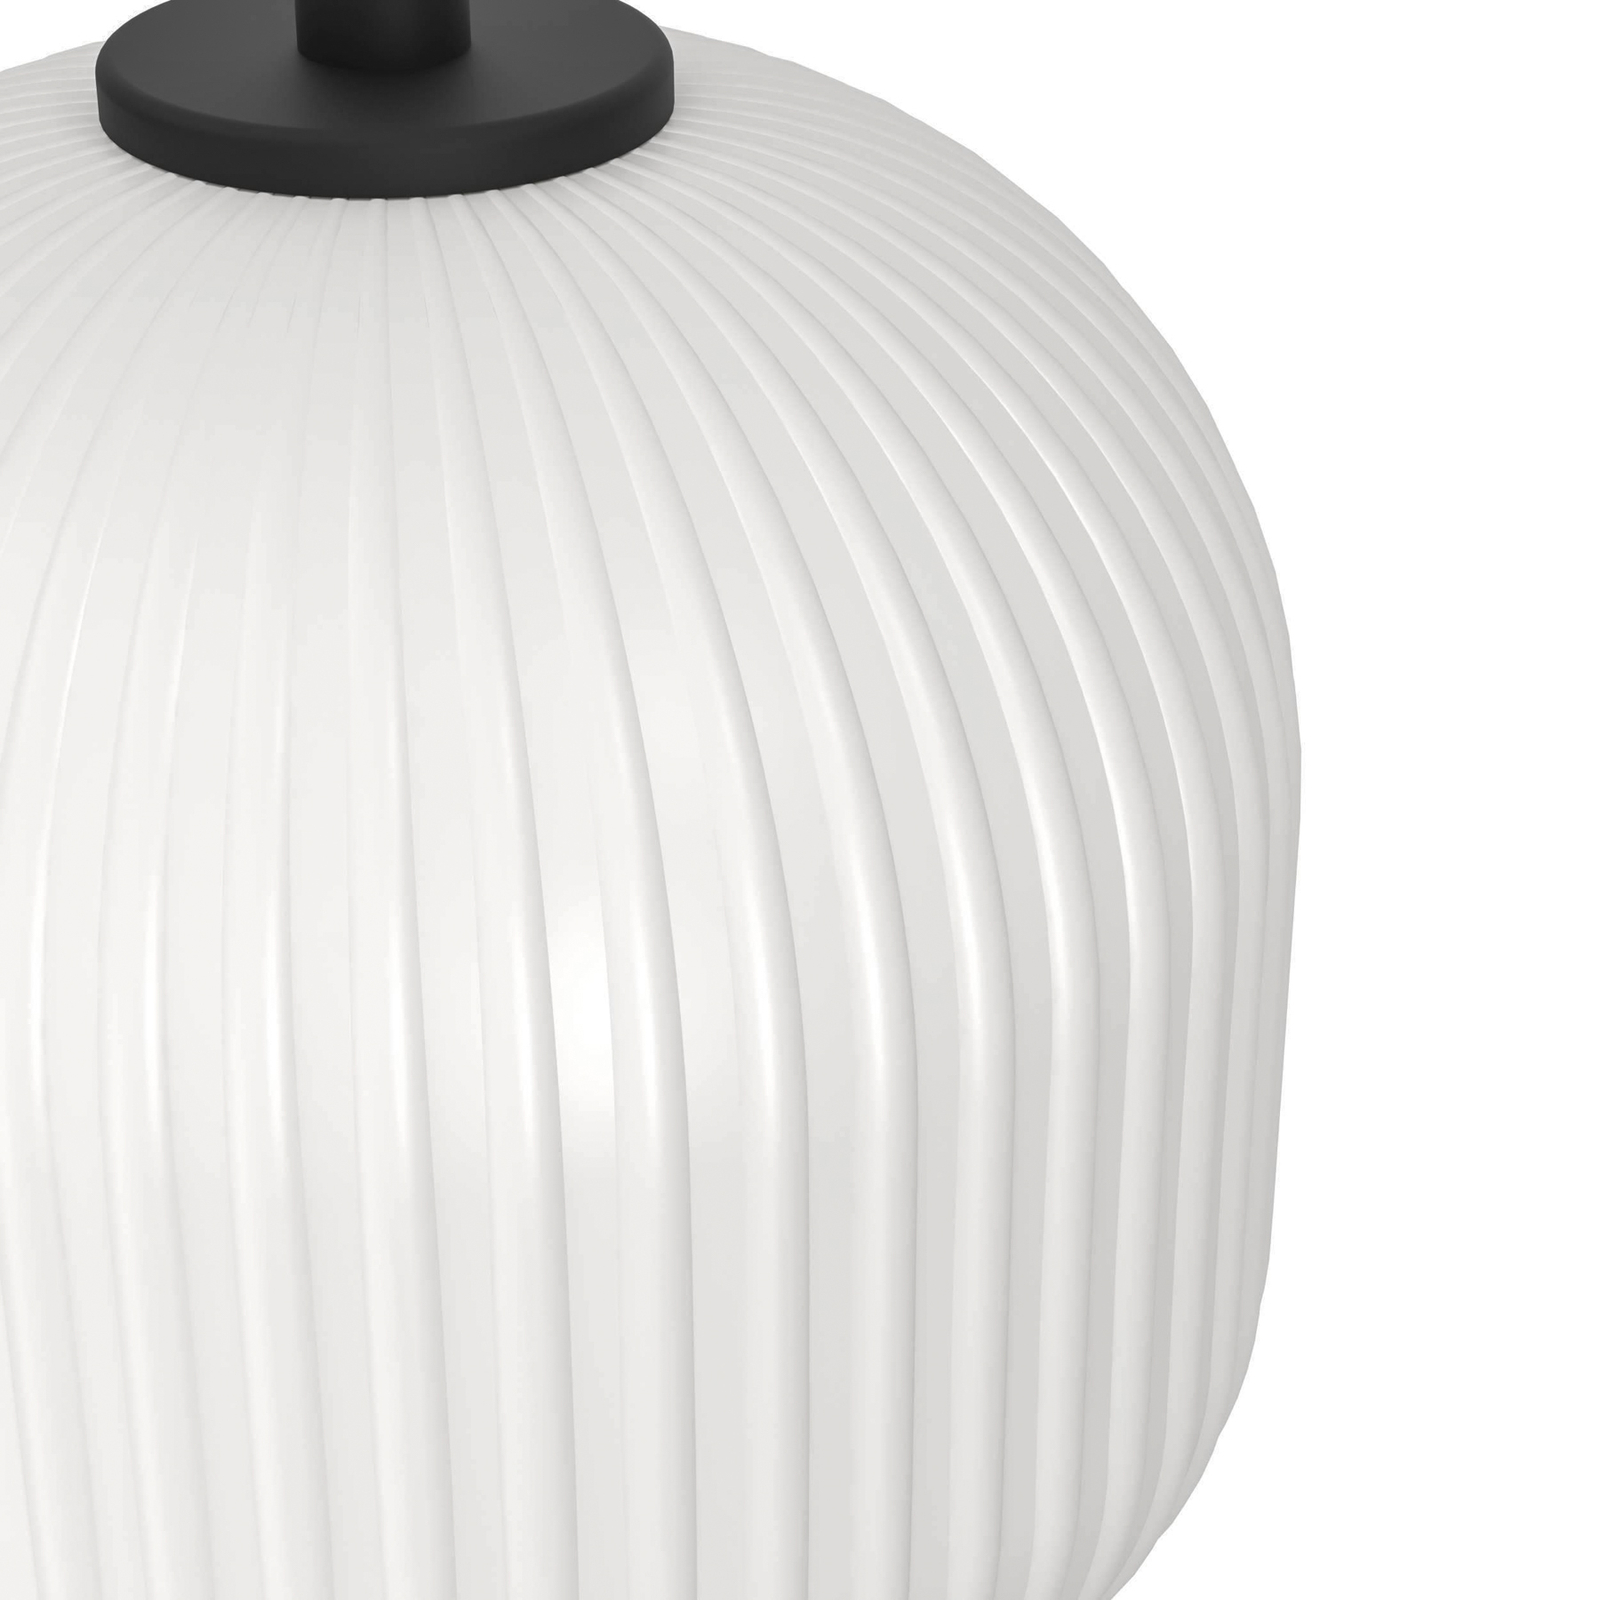 Mantunalle pendant light, length 120 cm, black/white, 3-bulb.